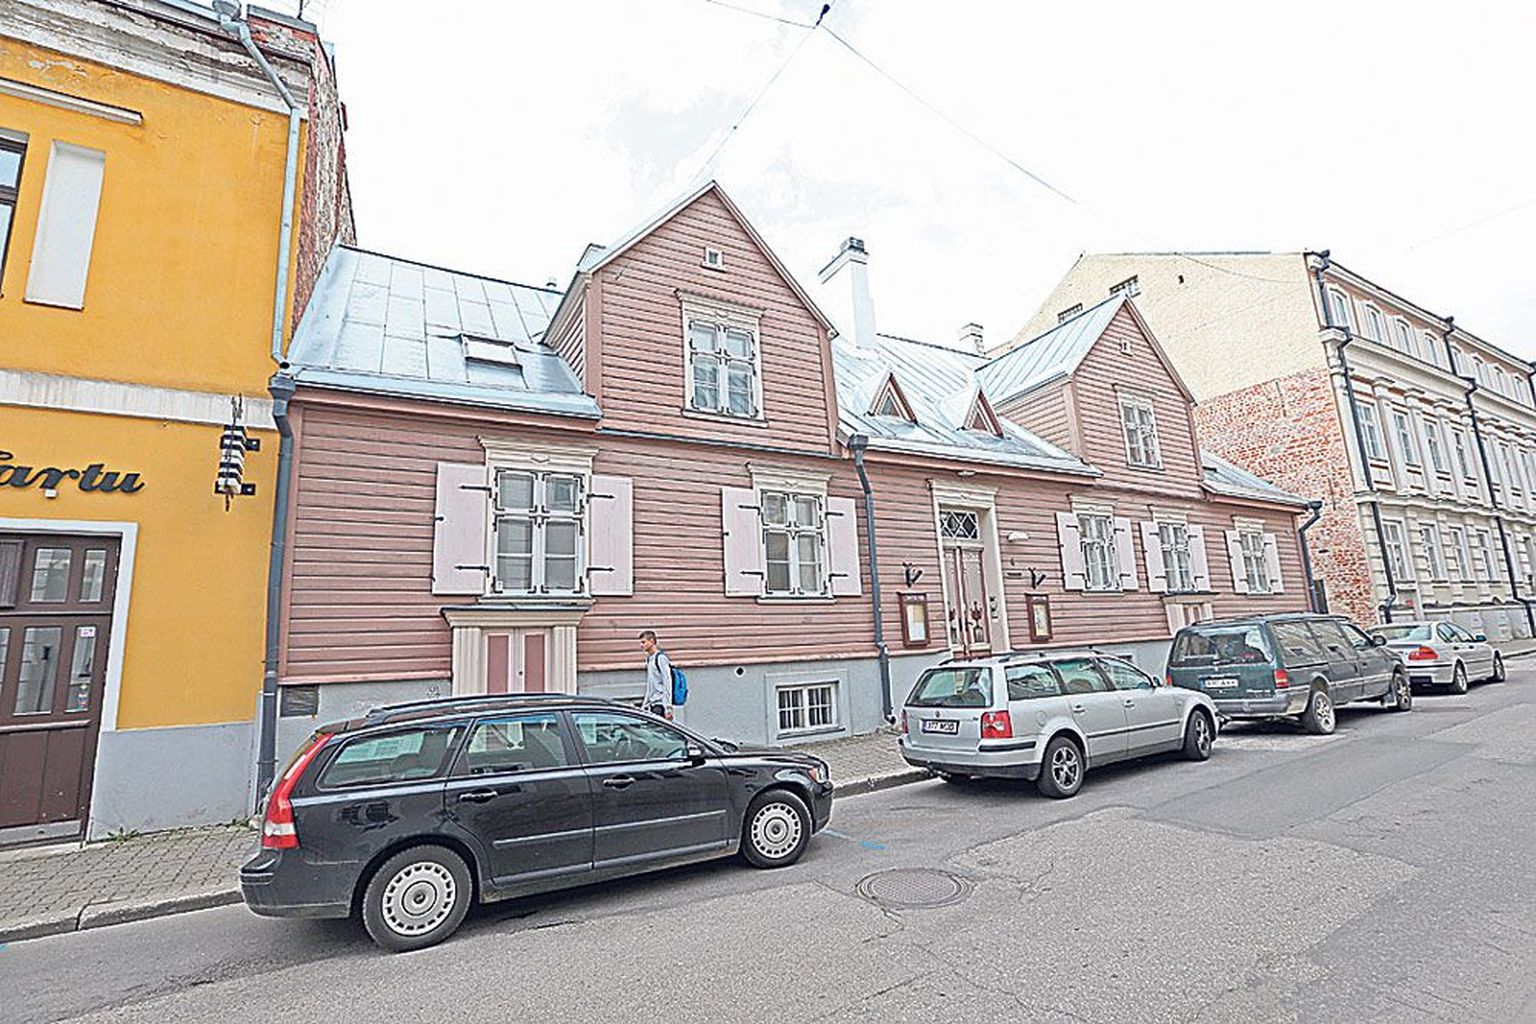 Tampere maja on küll korda tehtud Tampere linna raha eest, kuid kuulub Tartule.